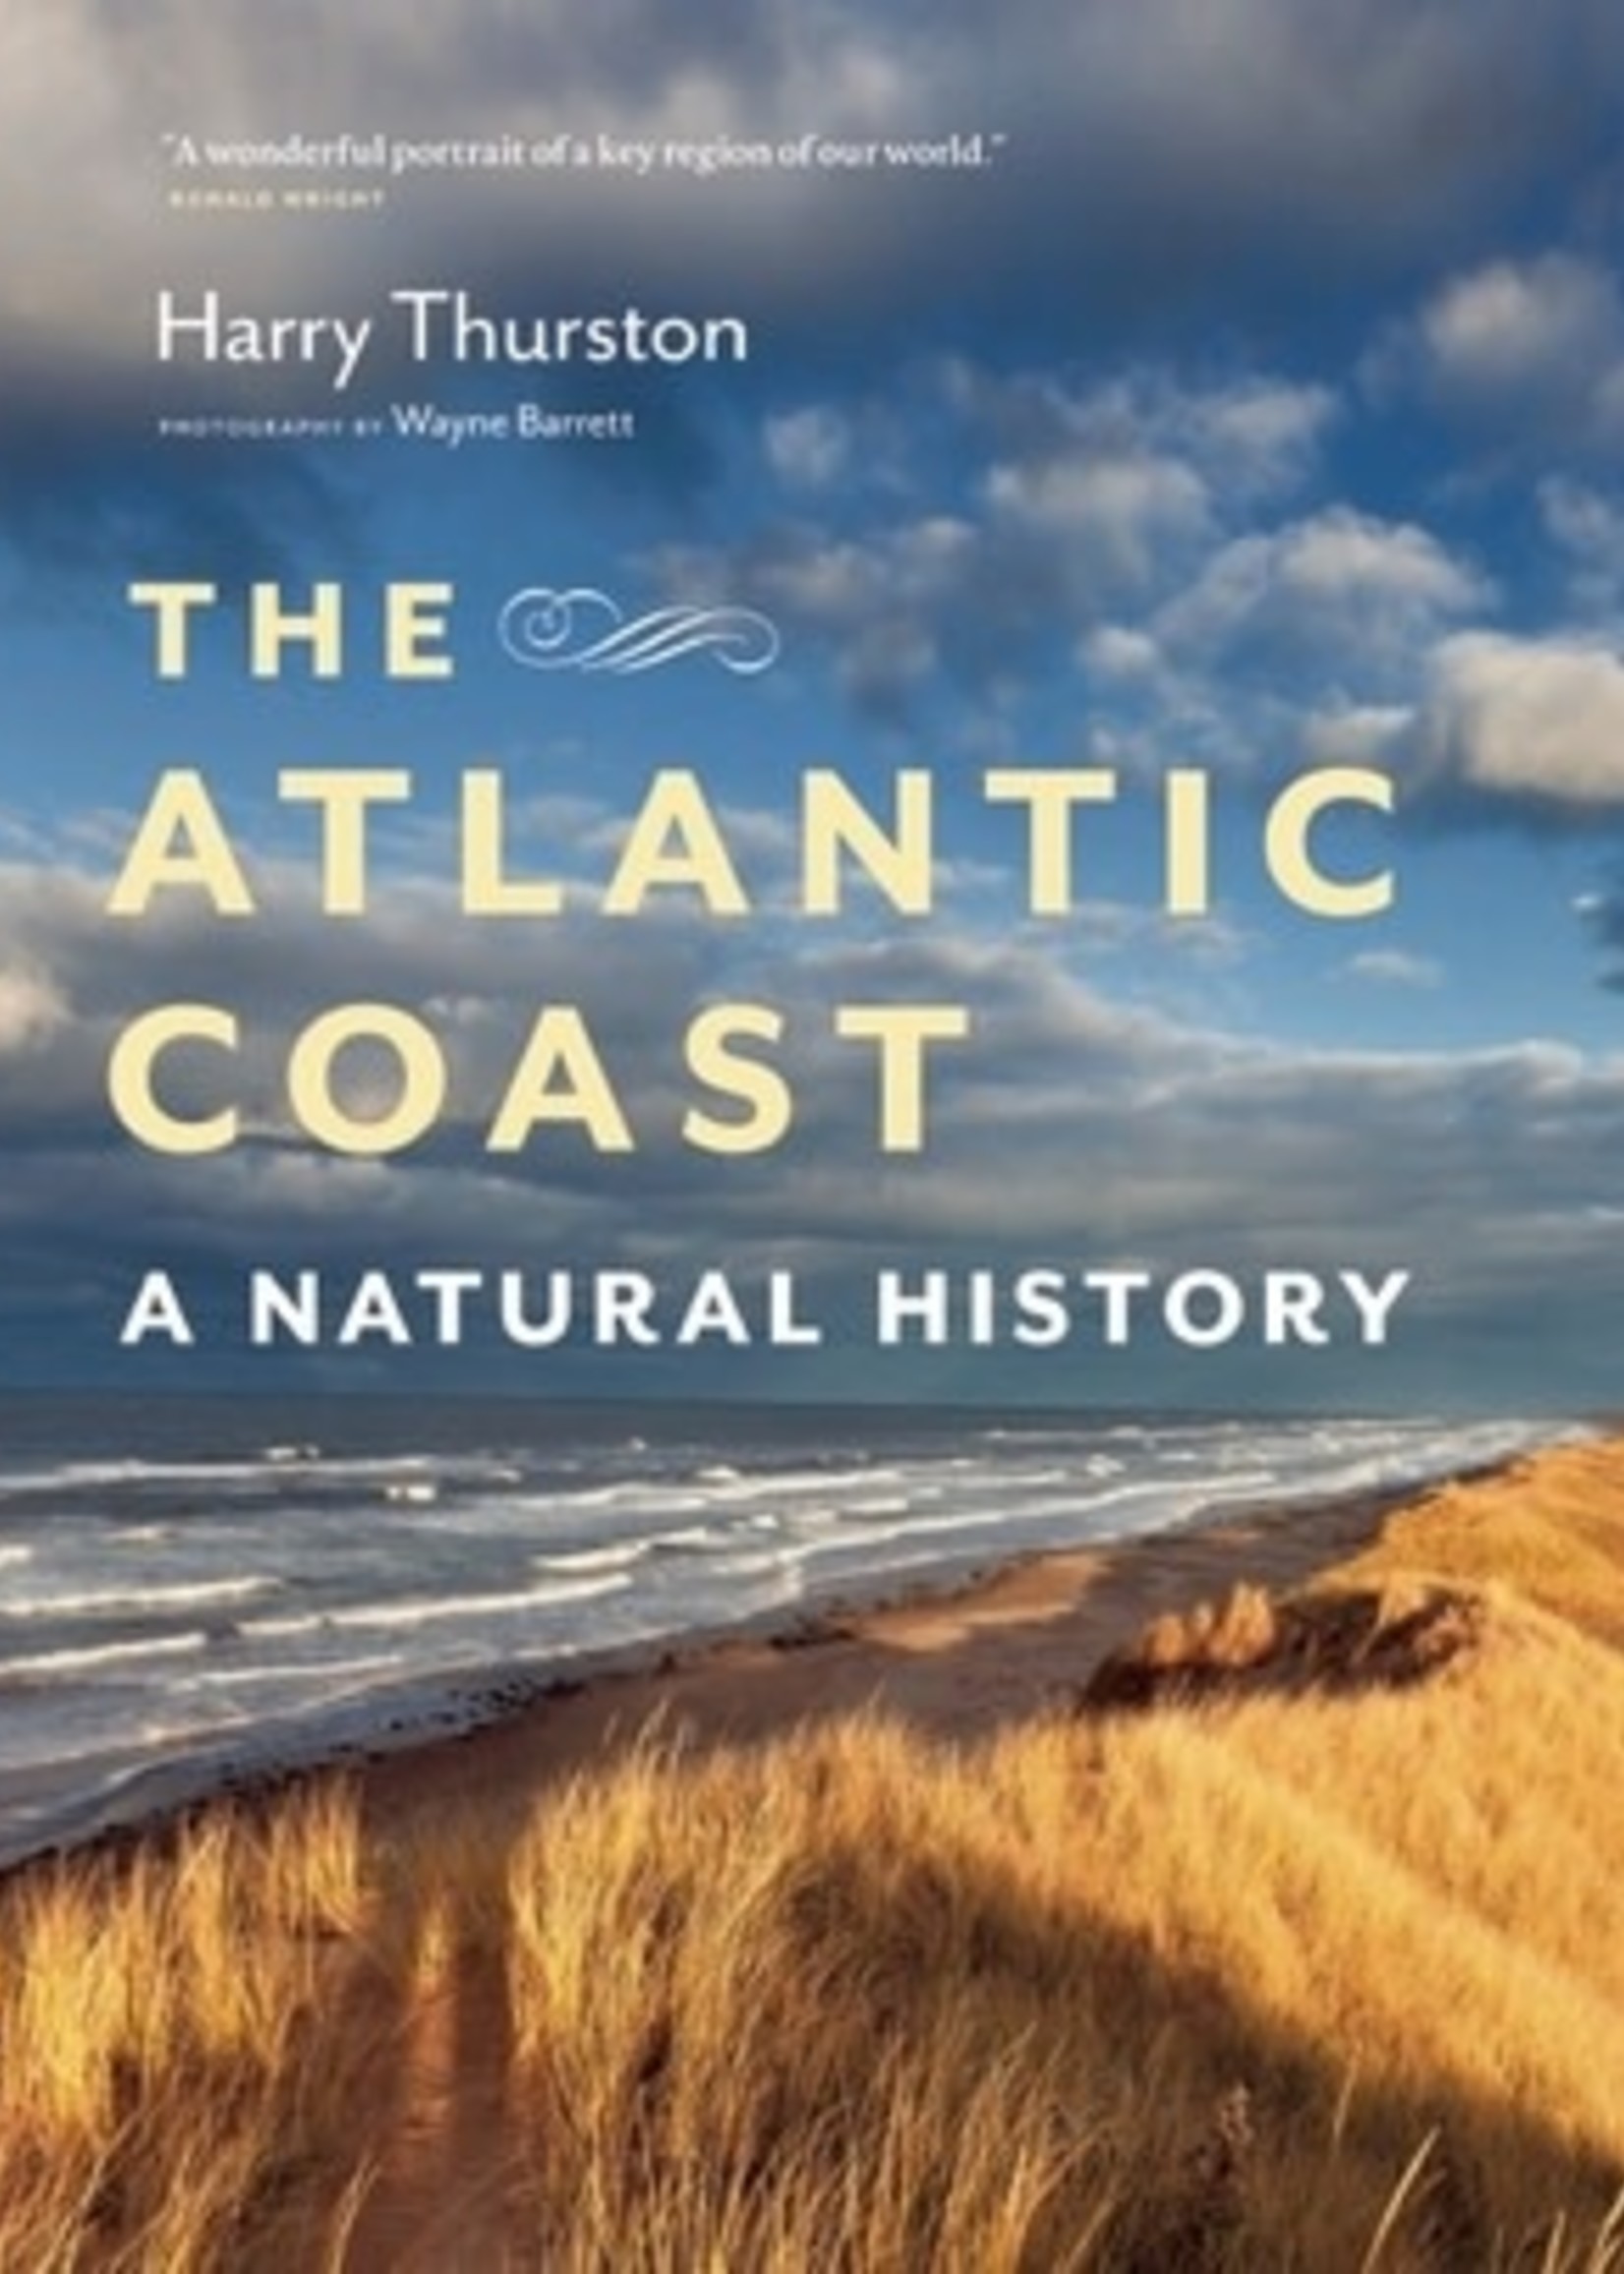 The Atlantic Coast: A Natural History by Harry Thurston, Wayne Barrett